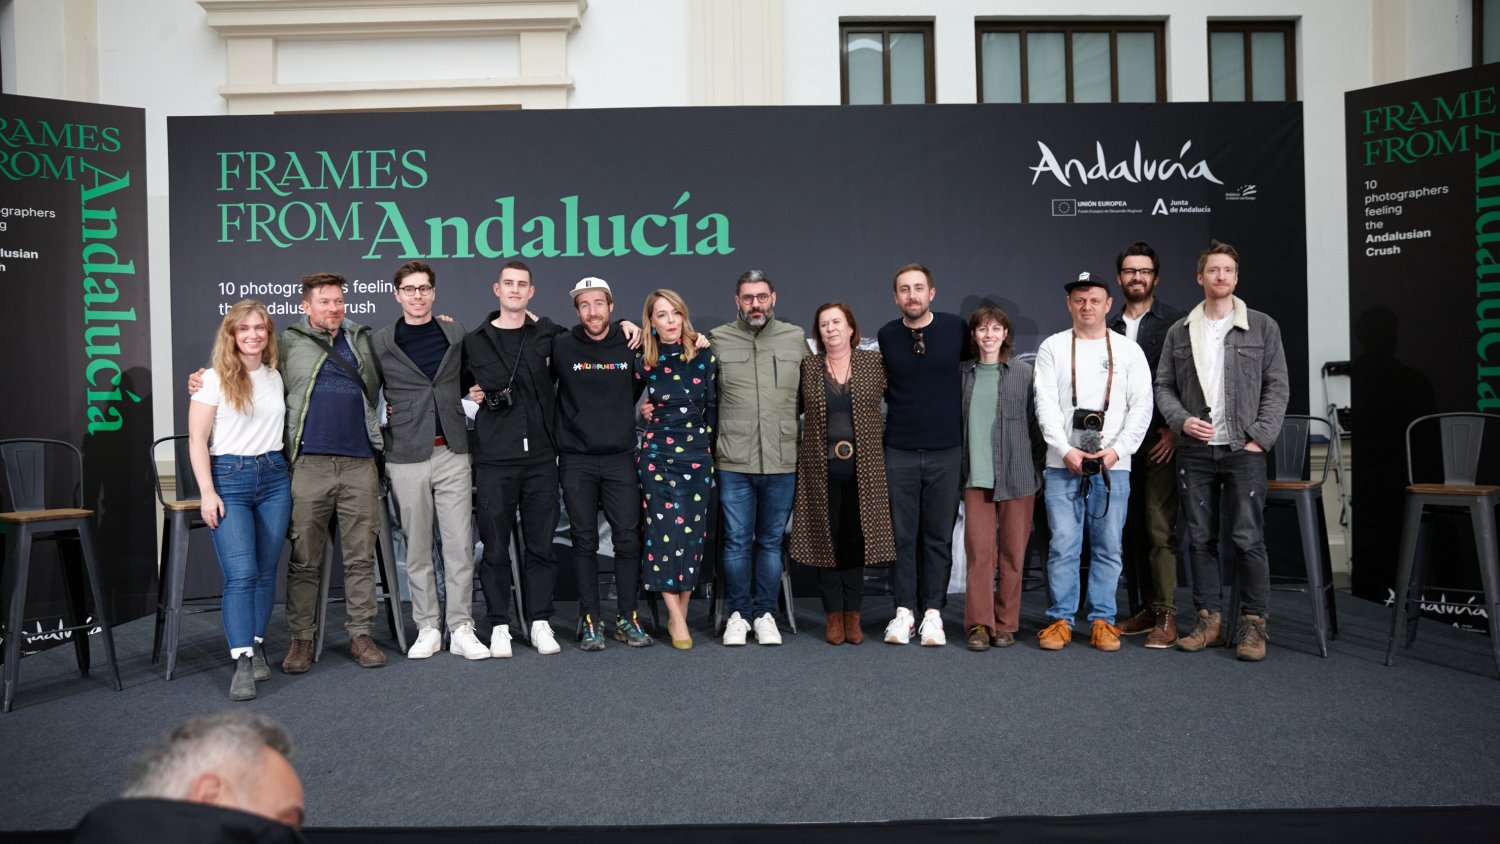 Diez fotógrafos internacionales de prestigio difundirán la imagen de Andalucía como destino